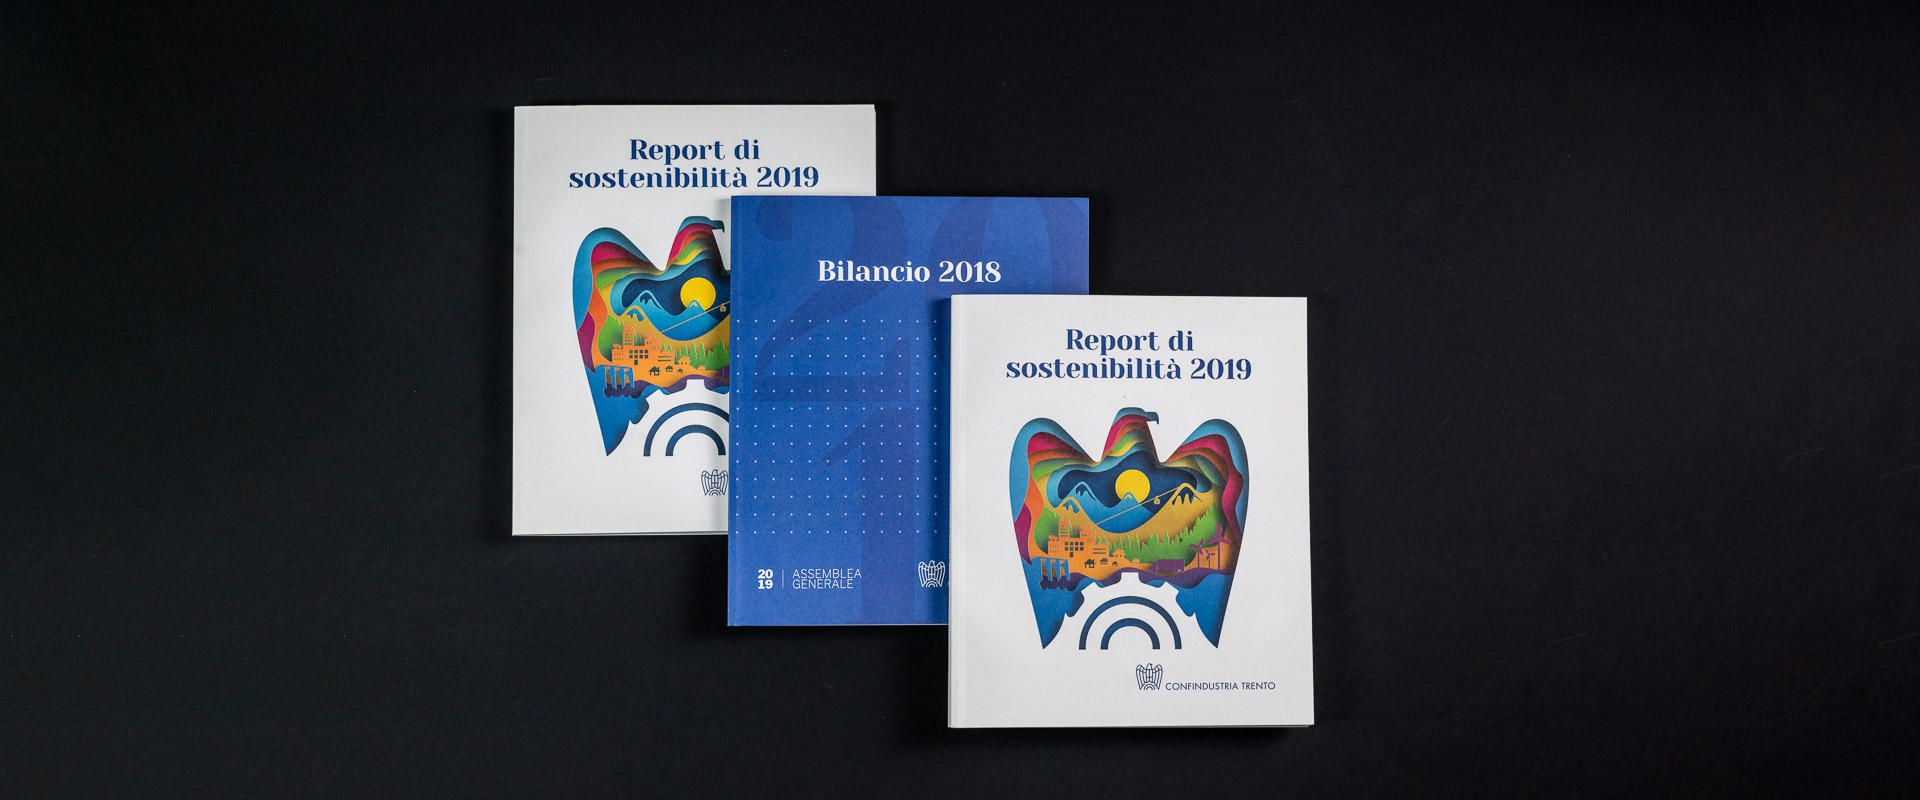 copertine report sostenibilita bilancio